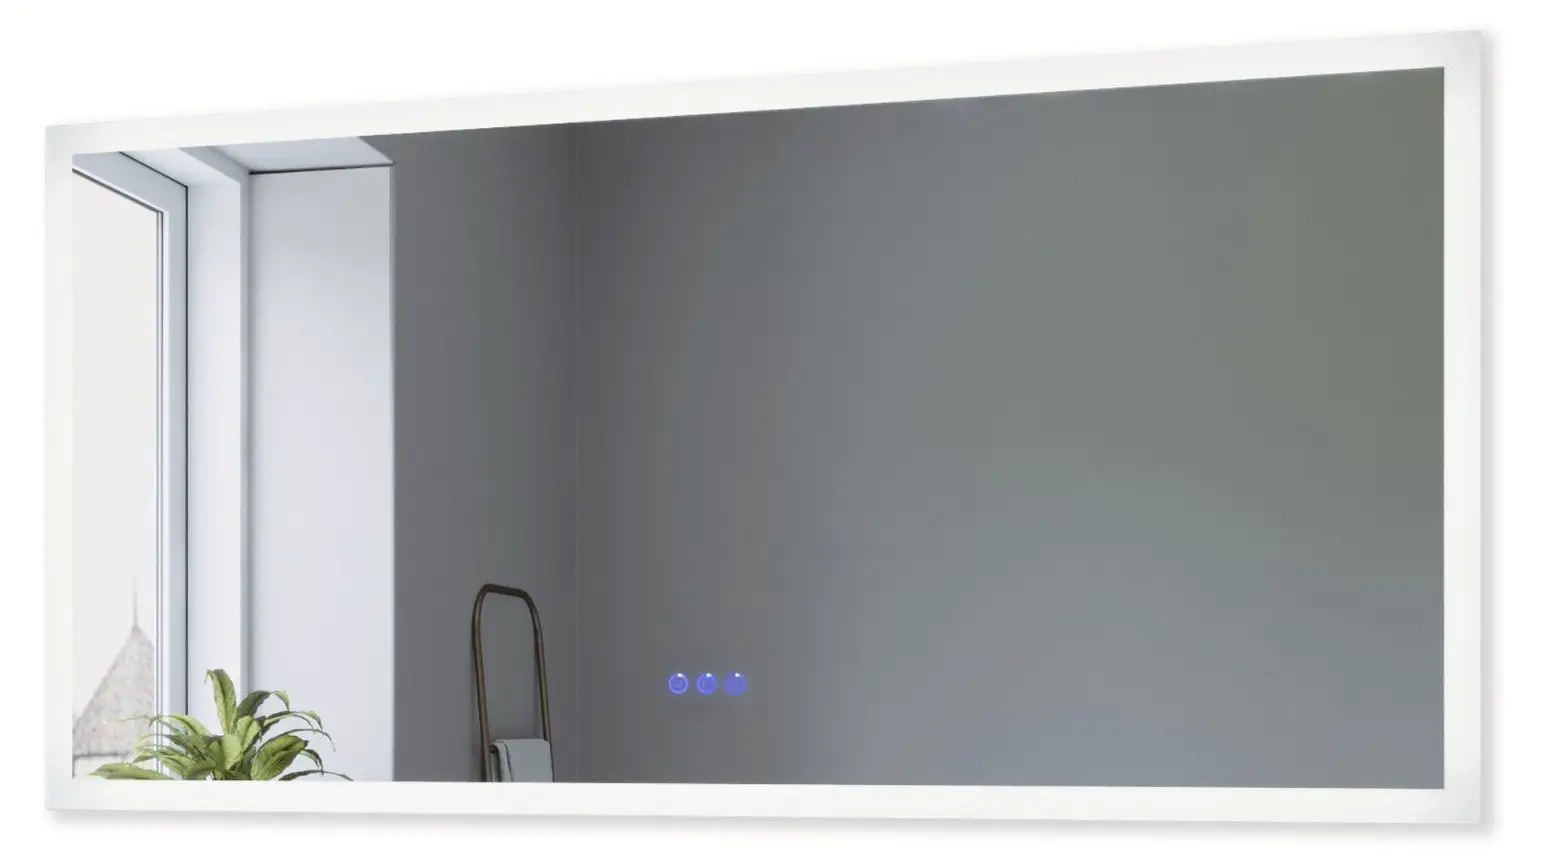 LED Gro脽er Touch Wandspiegel Badspiegel